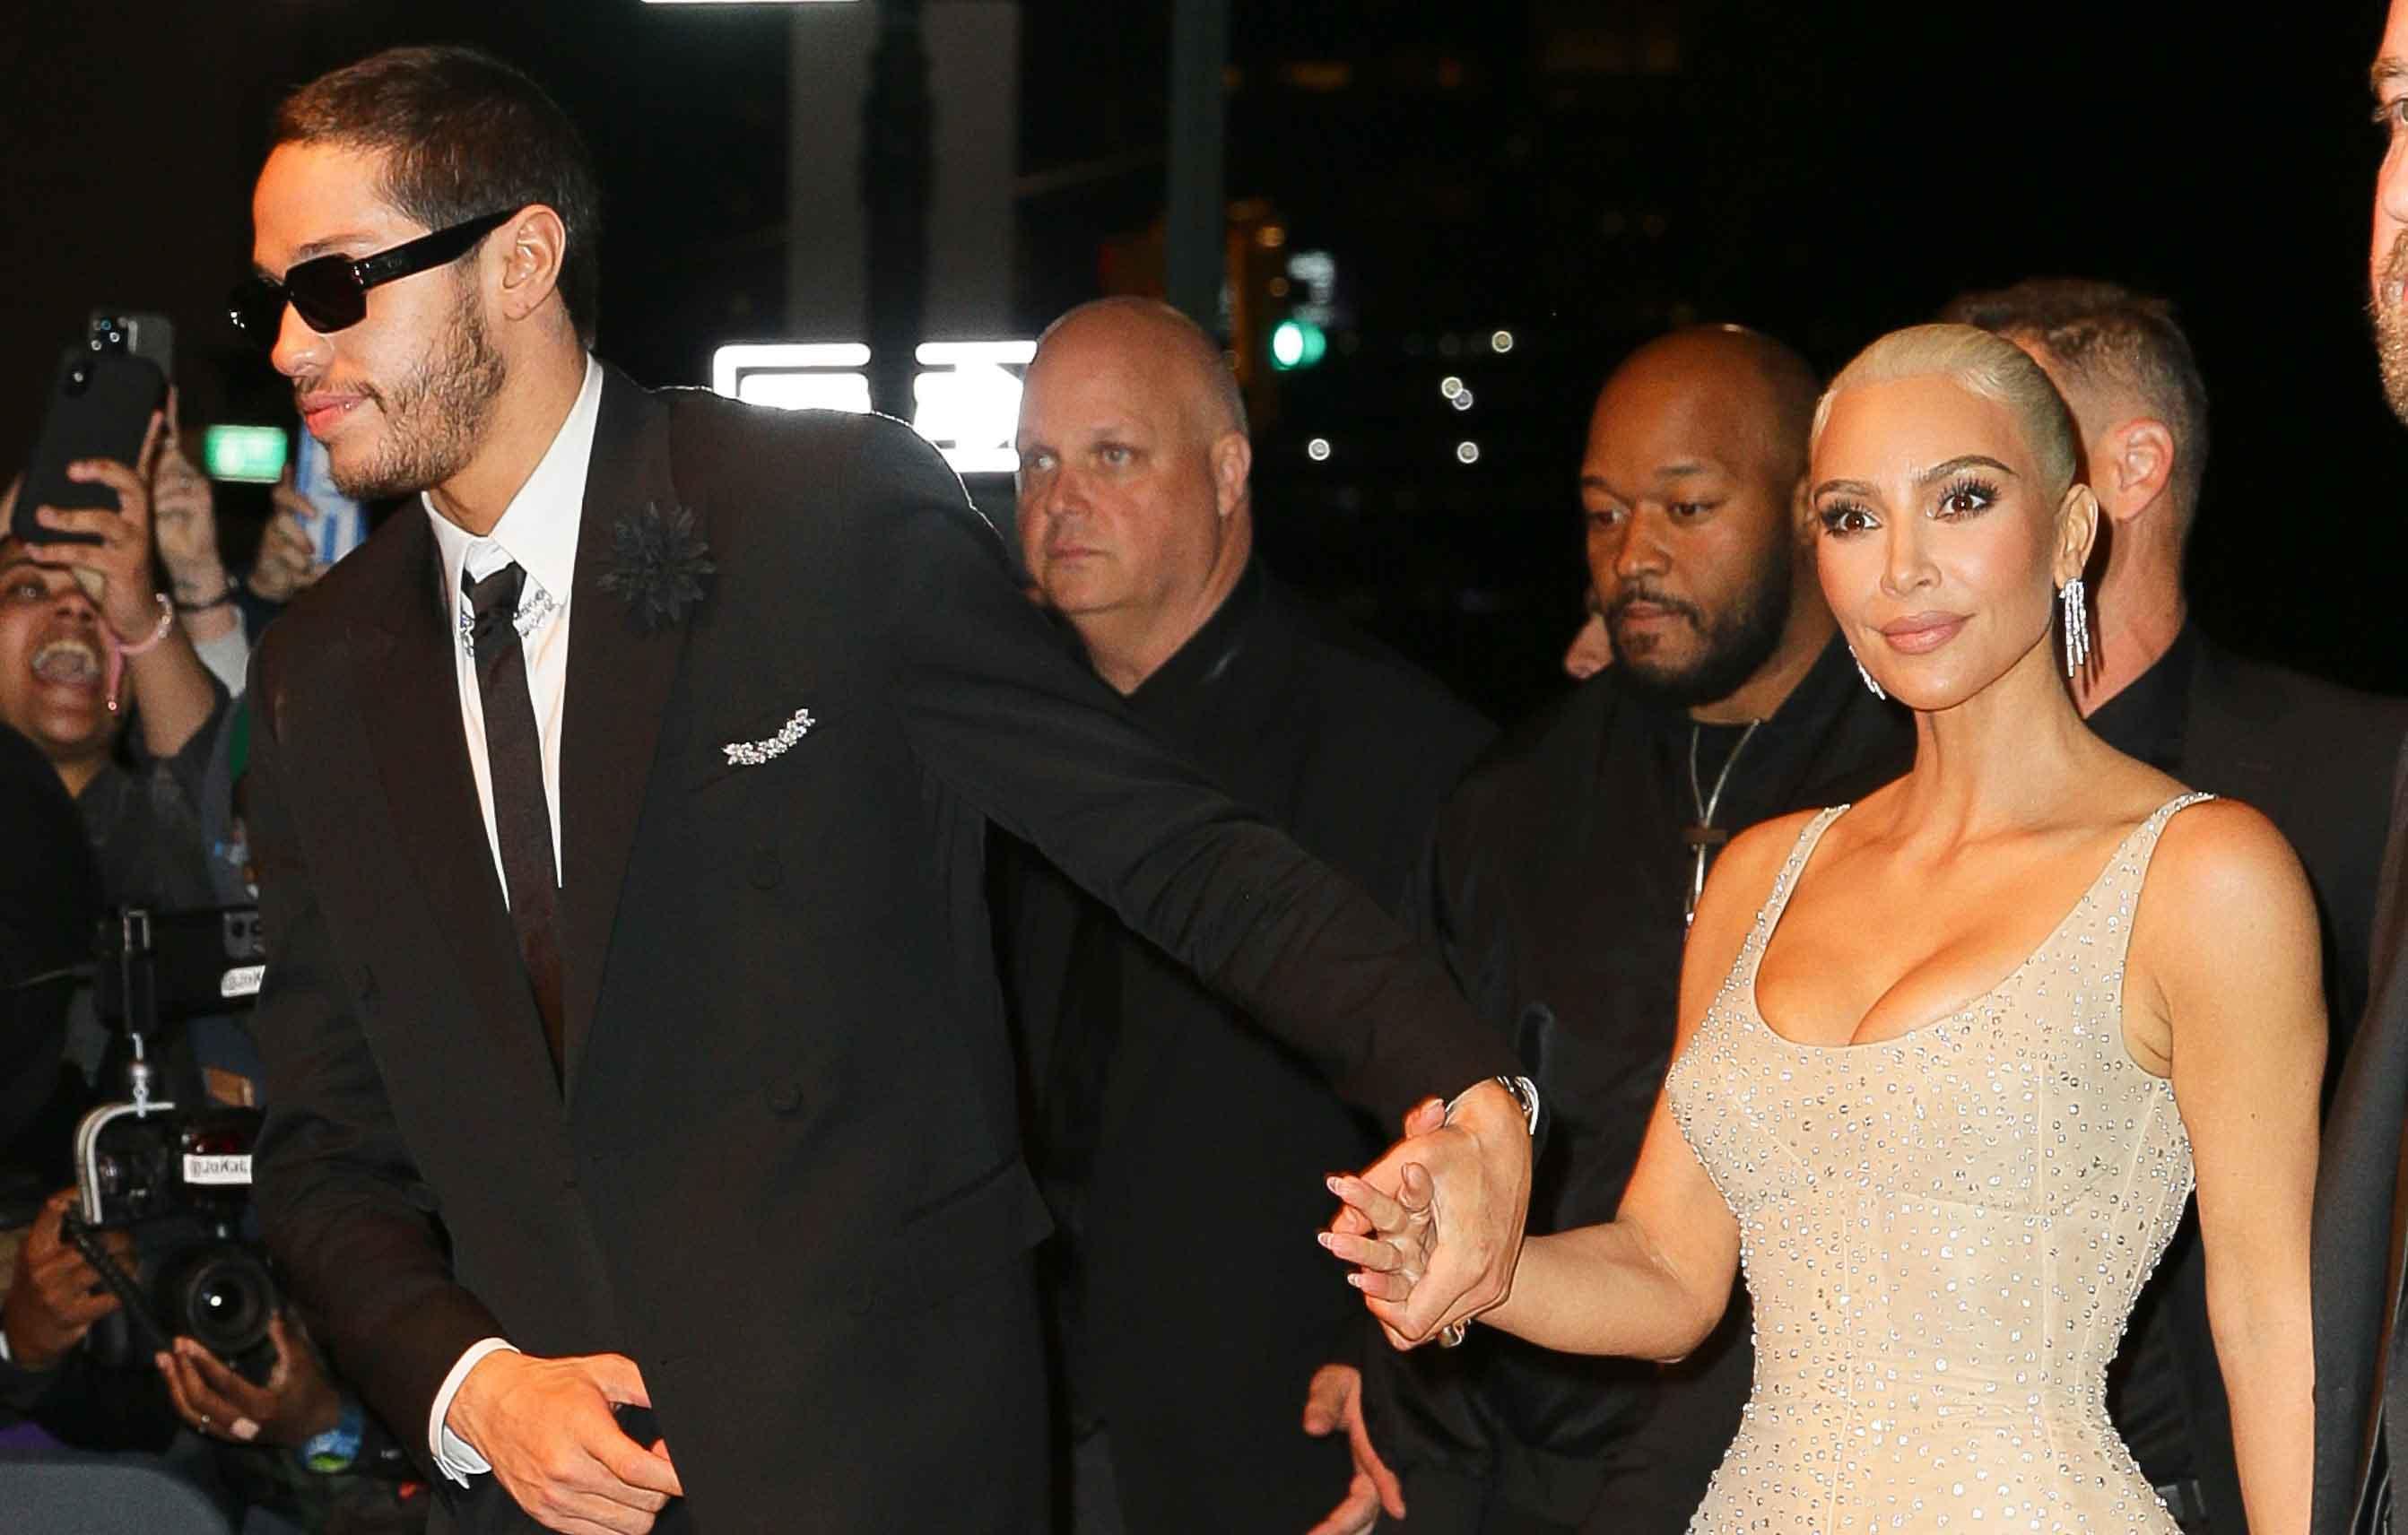 Kim Kardashian slams 'appalling' Kanye West meme about Pete Davidson